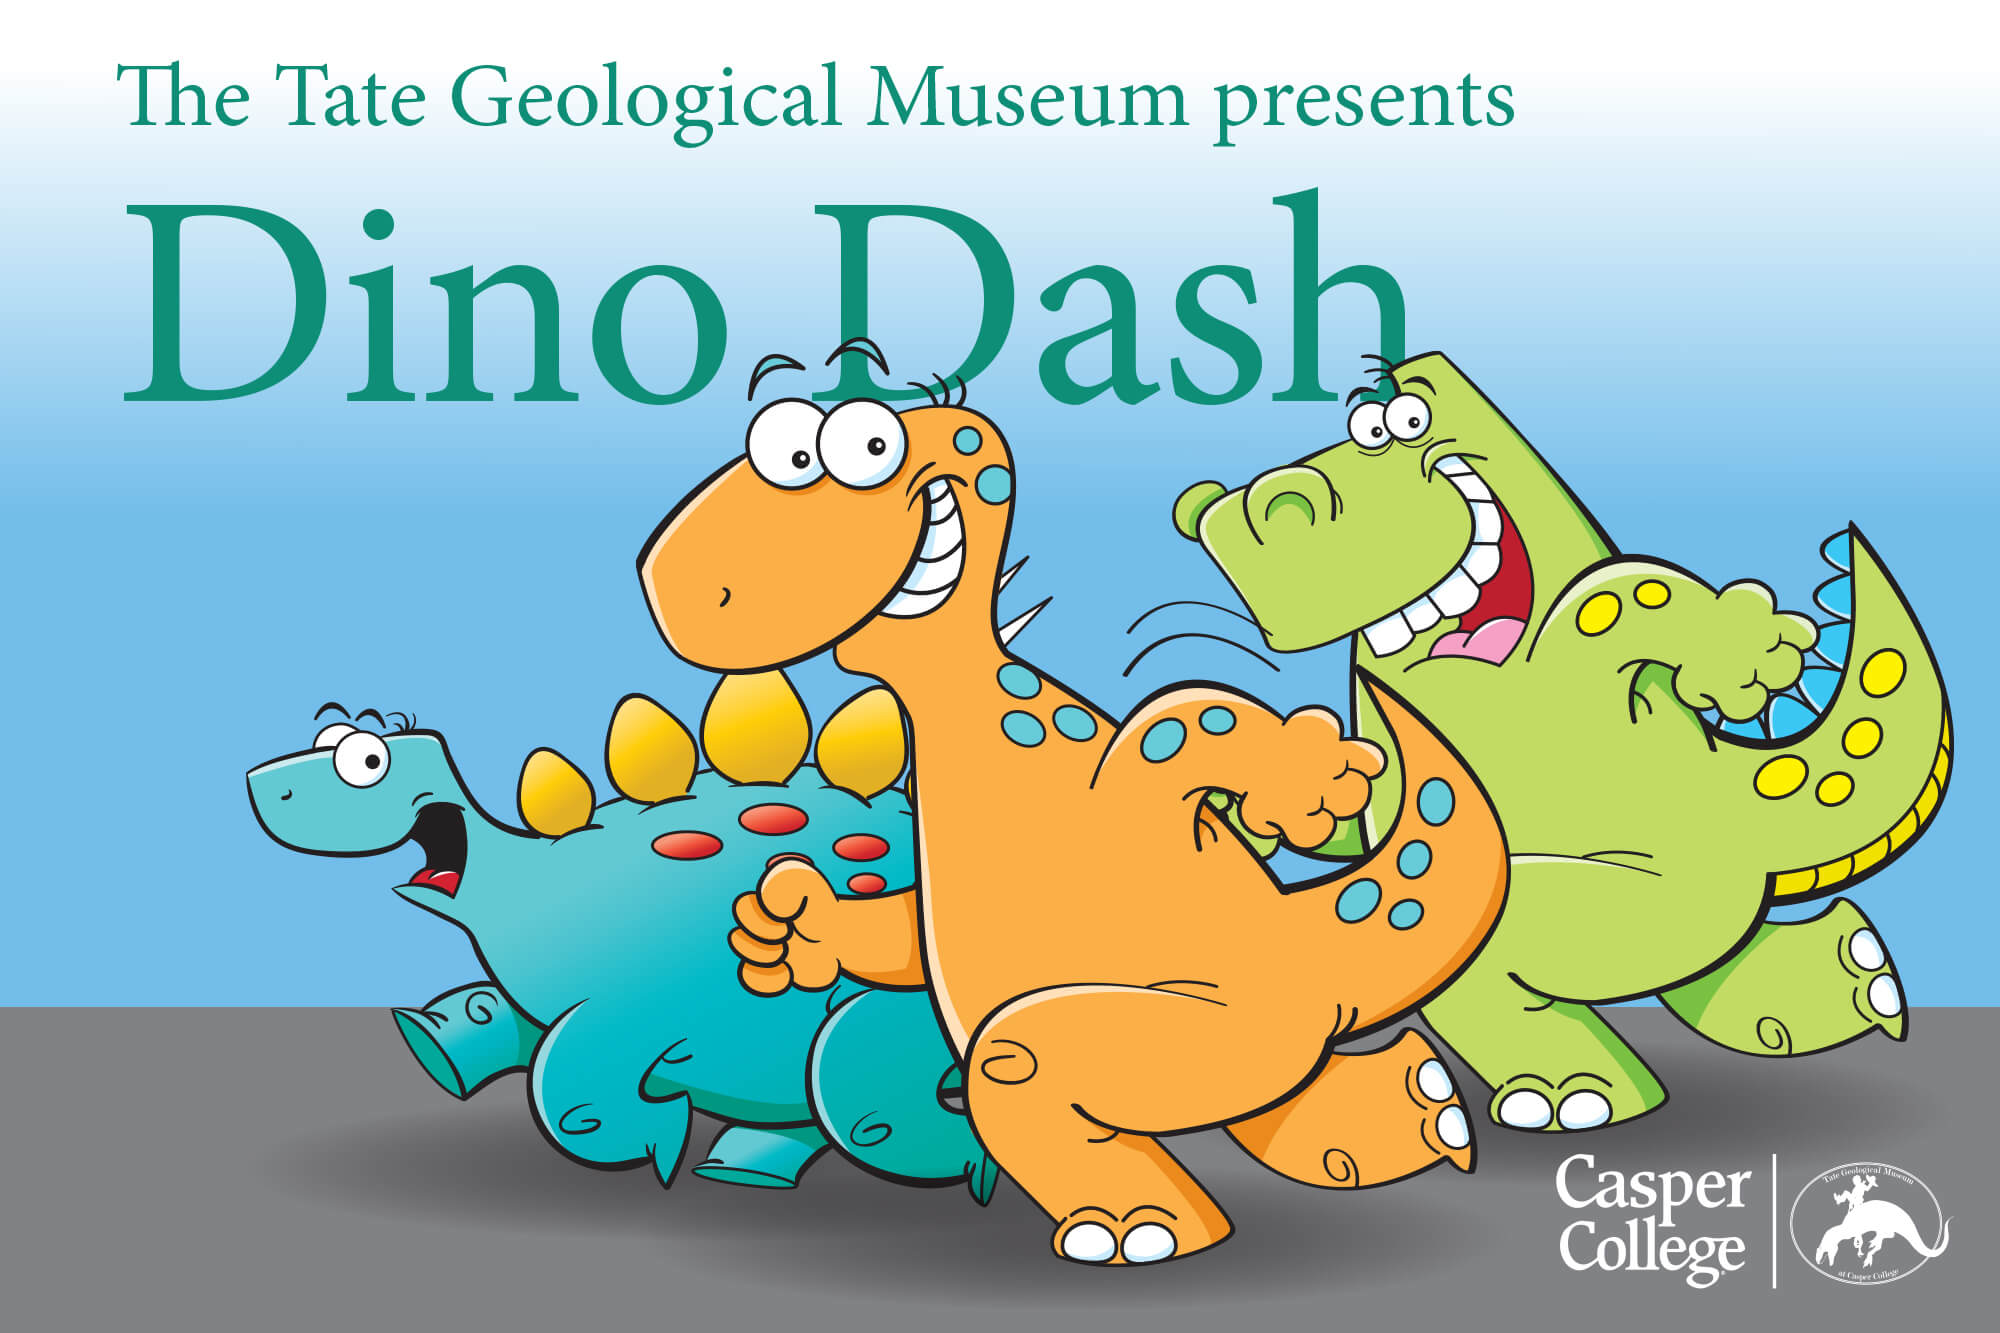 Image for "Dino Dash" fun run press release.